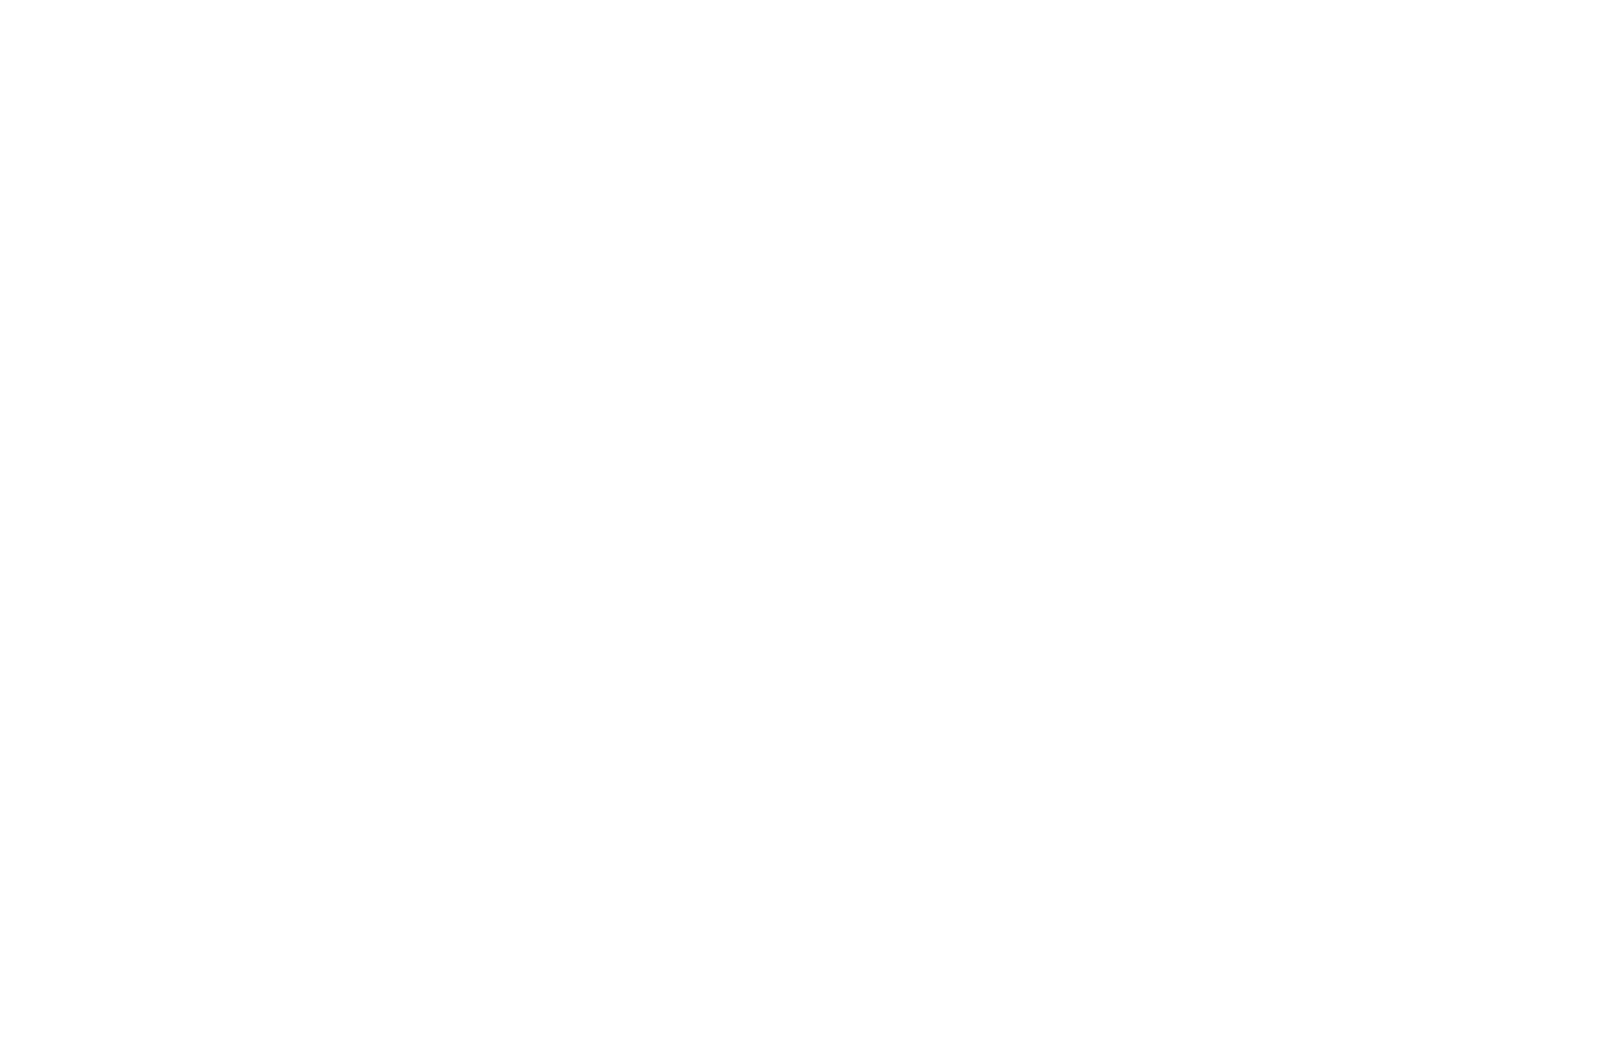 人気急上昇のアーティスト・OLDCODEX 初のアリーナ公演決定で話題騒然サムネイル画像!